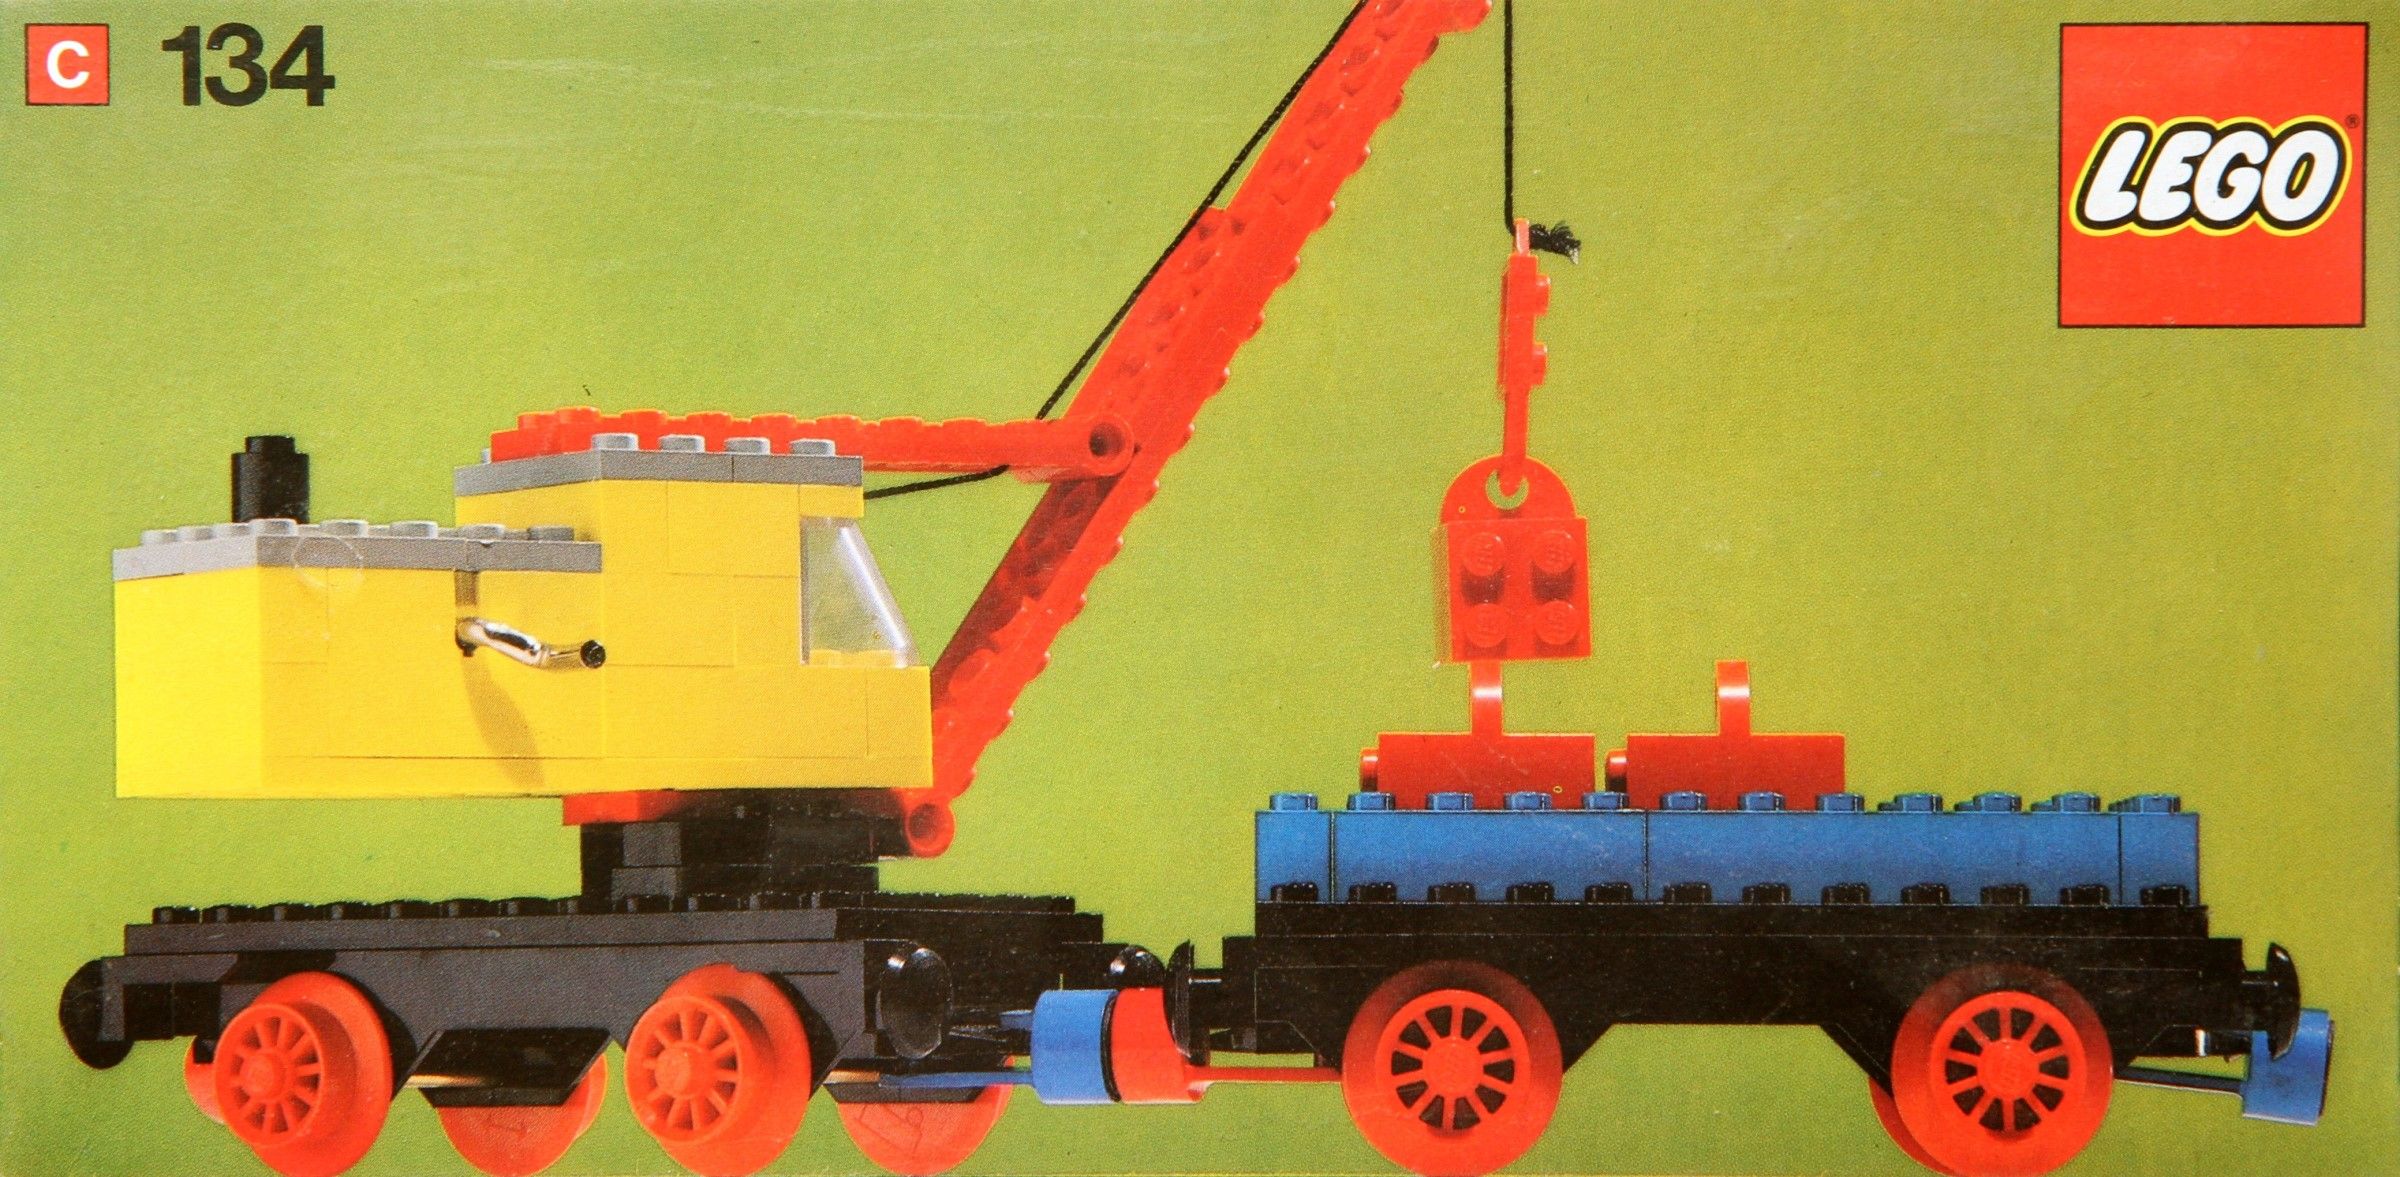 Mobile Crane and Wagon